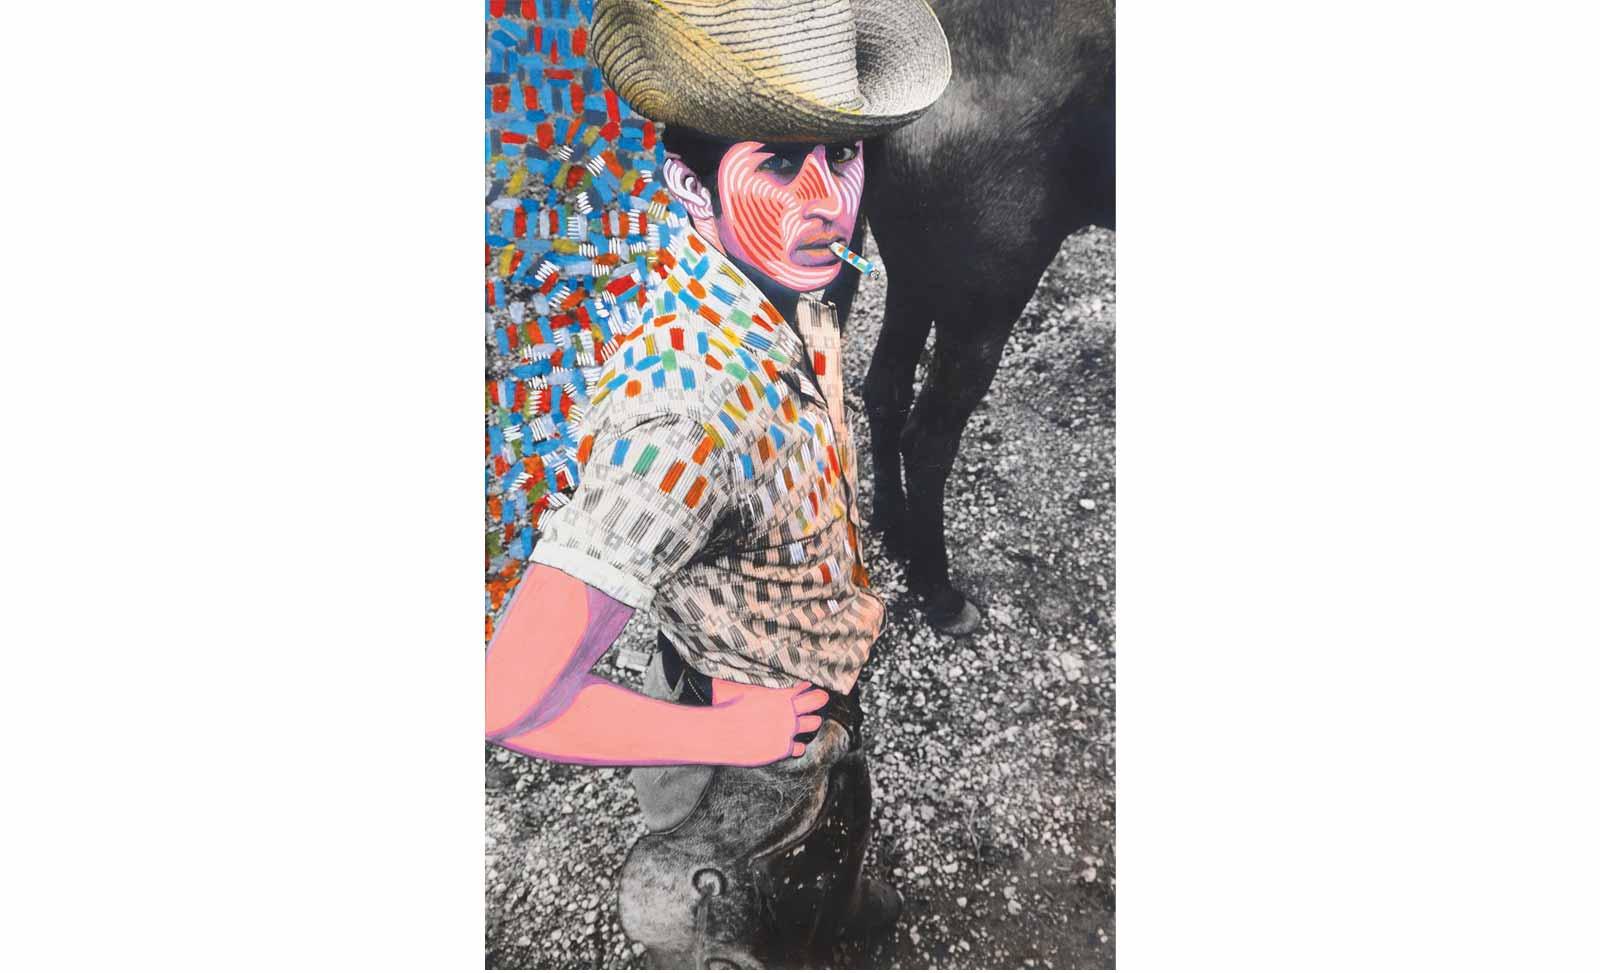 Raúl Martínez, El vaquero (Cowboy), c. 1969.